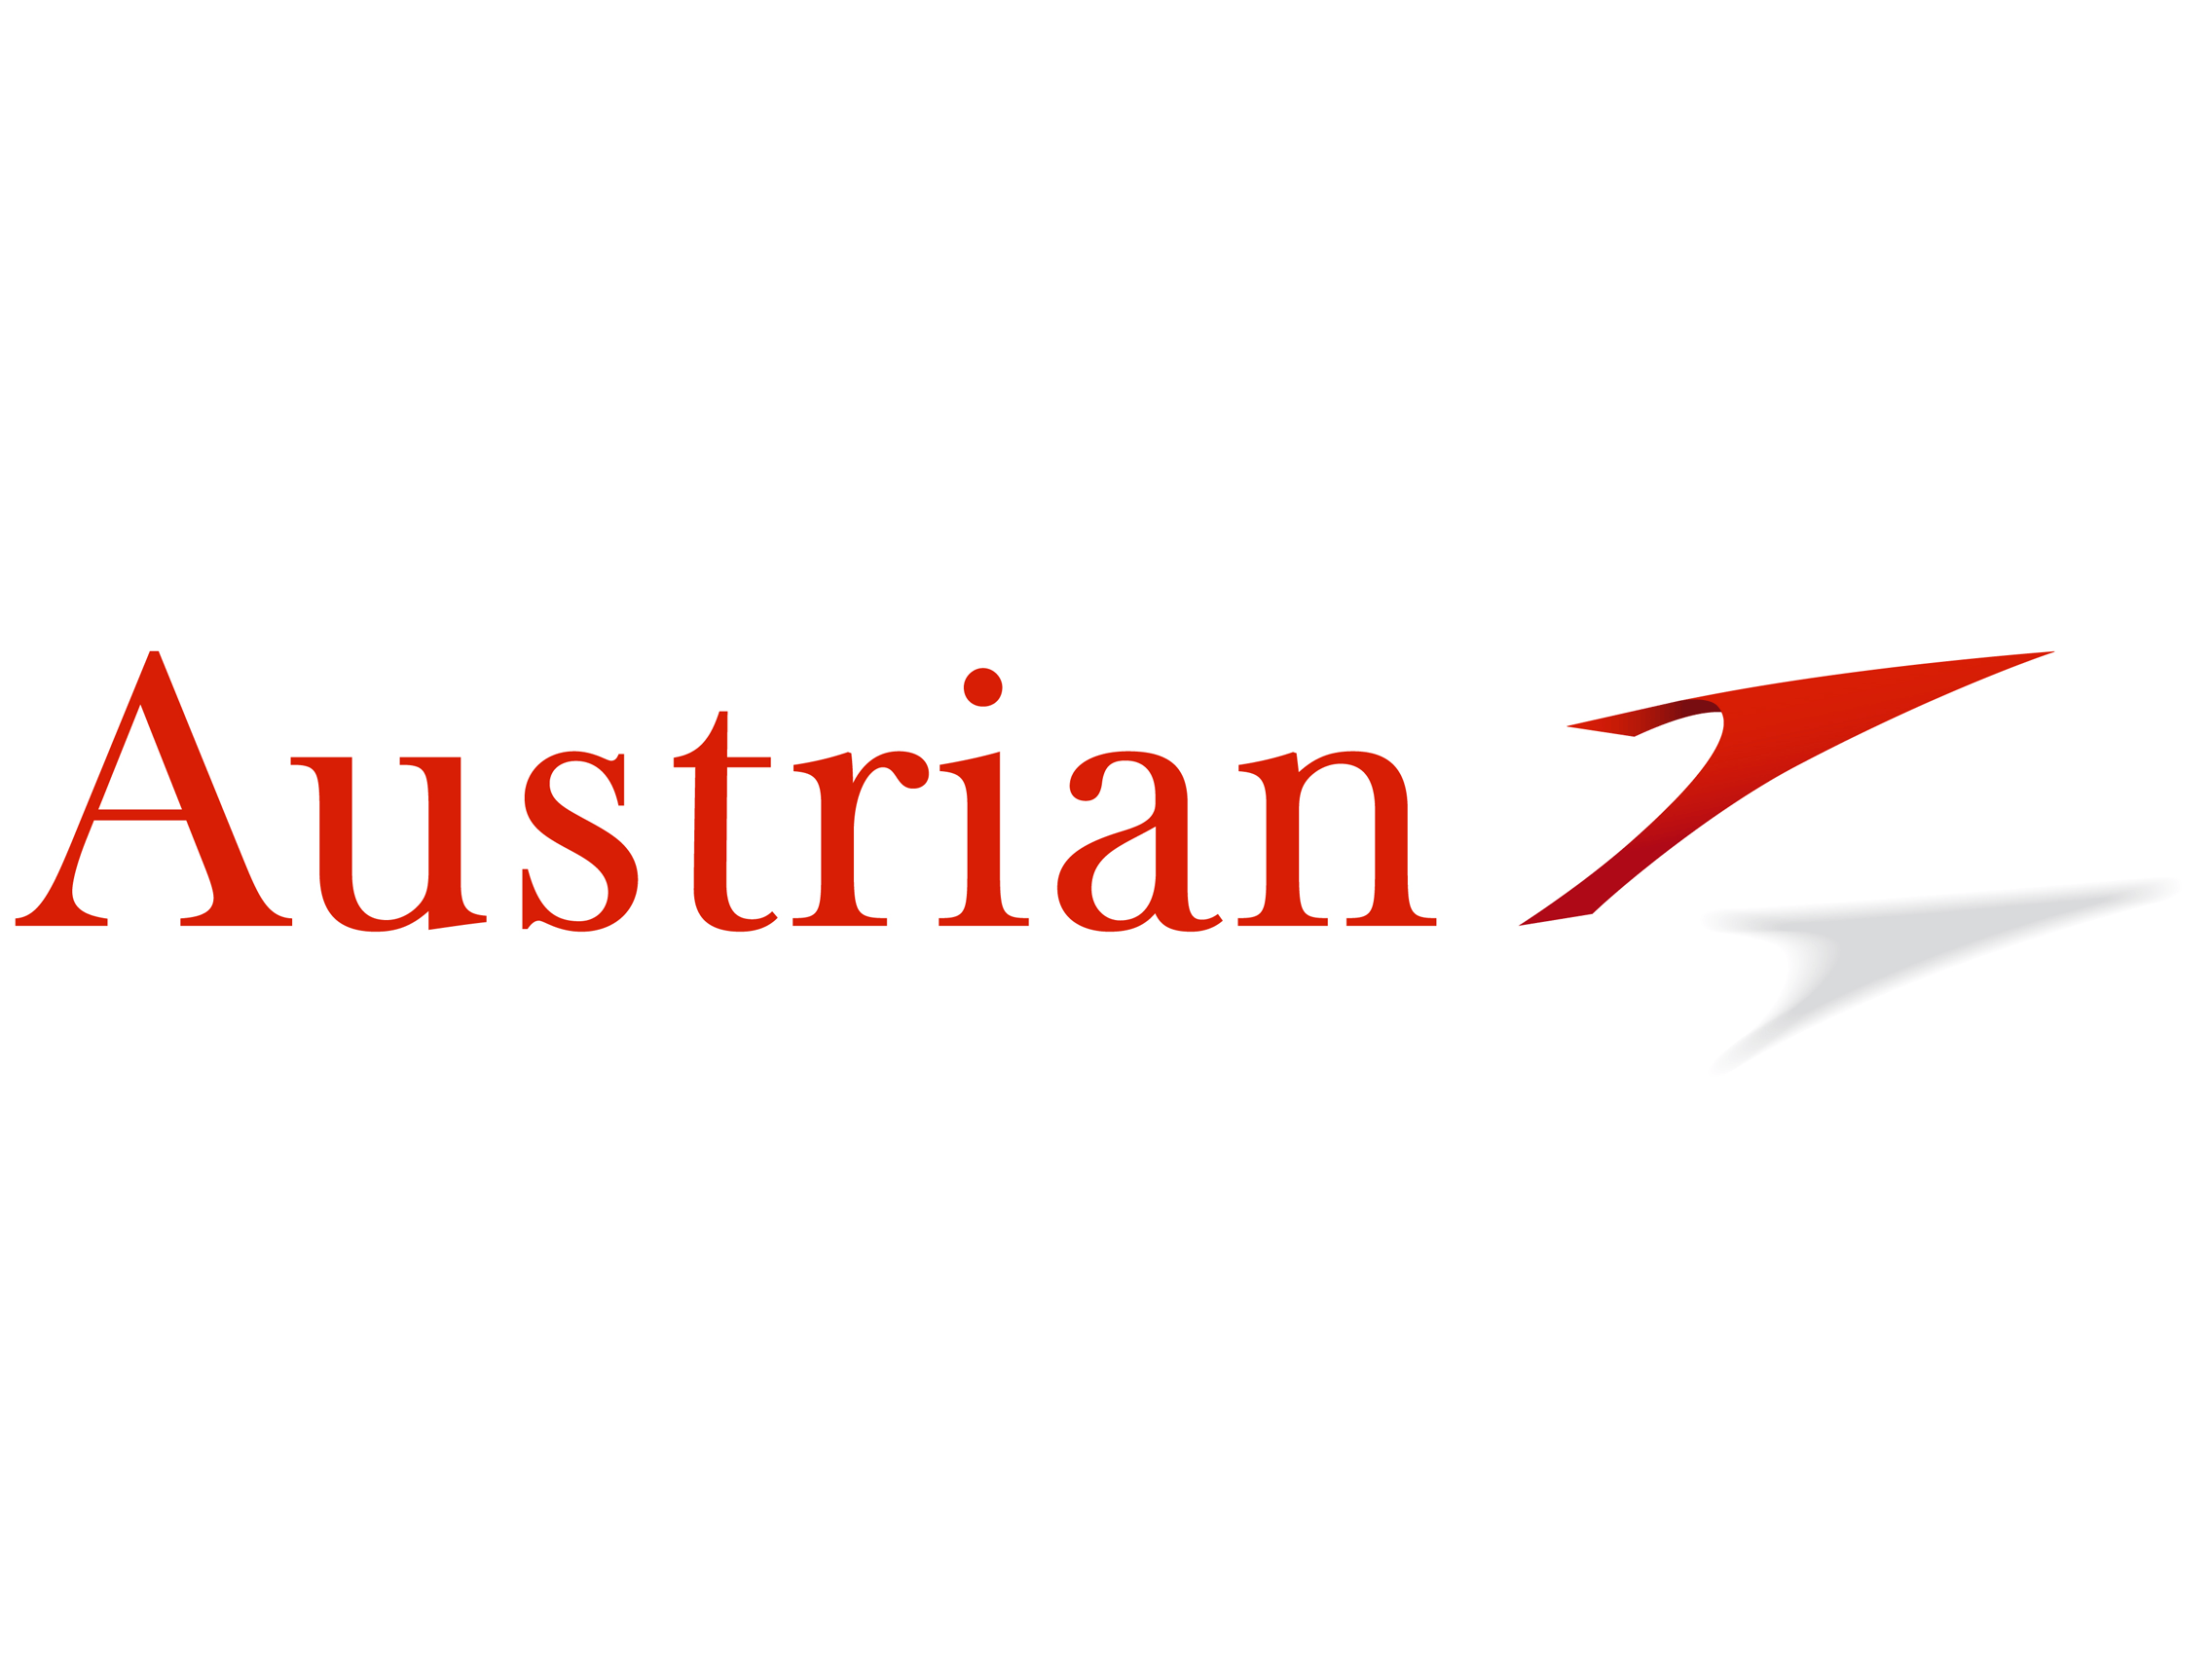 Austrian Airlines Logo - Austrian Airlines logo and wordmark - Logok